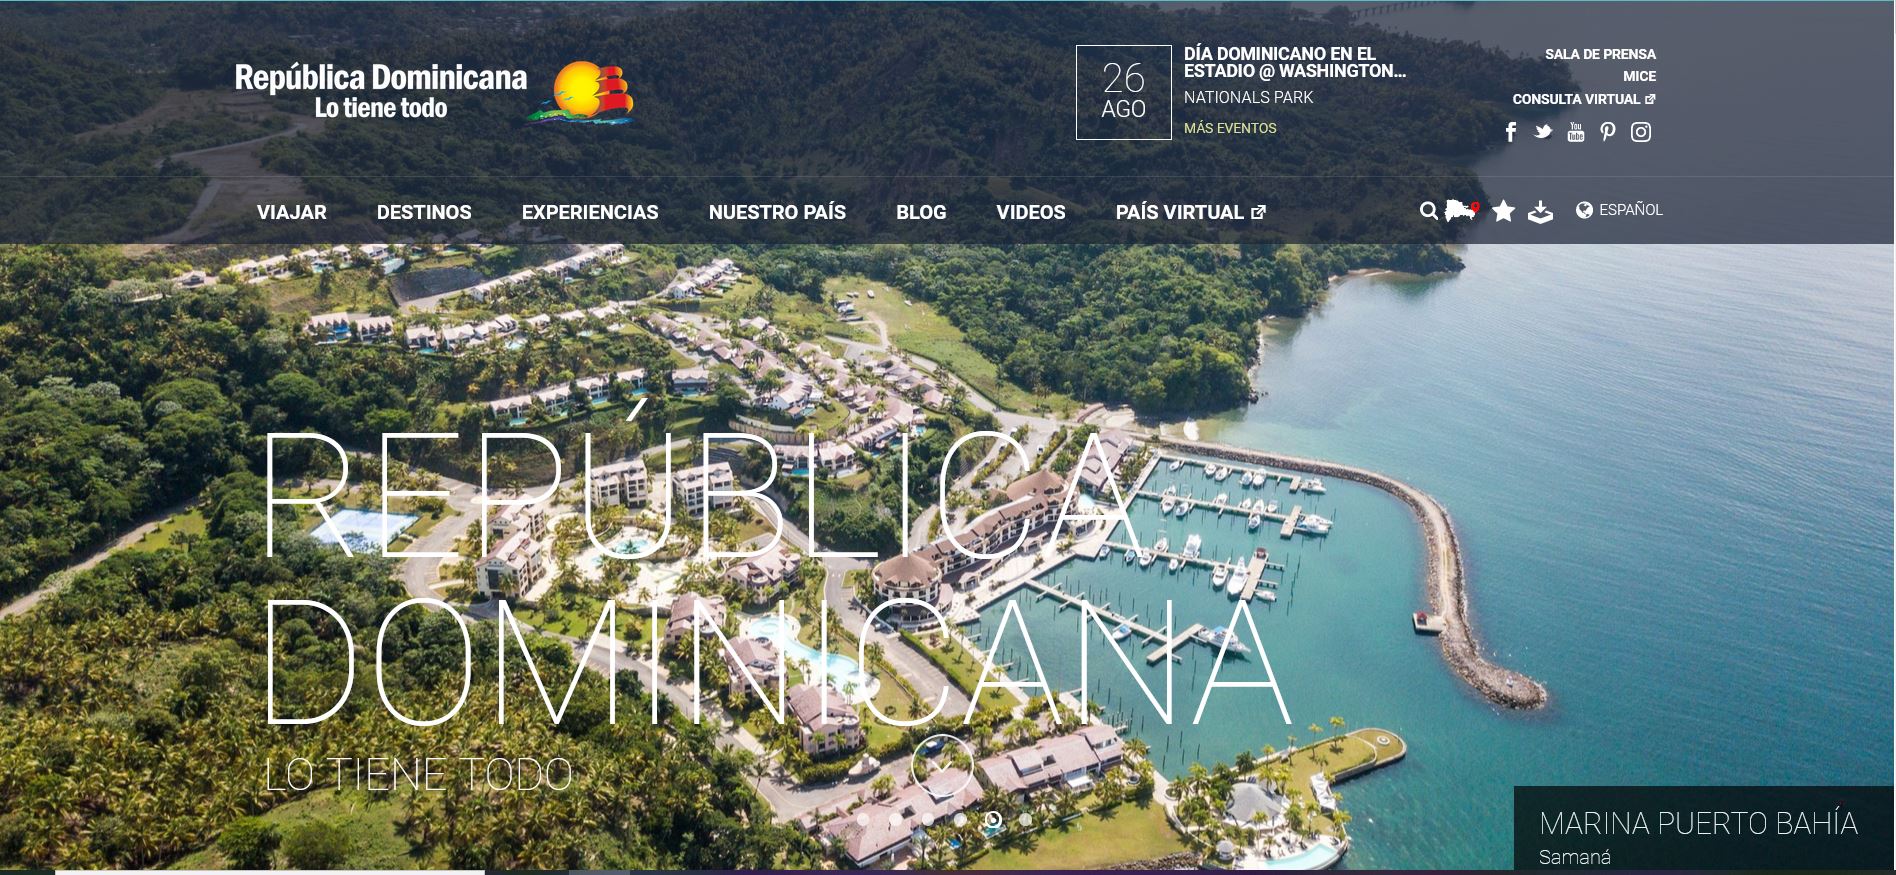 República Dominicana responde a las dudas de los visitantes a través de herramienta virtual